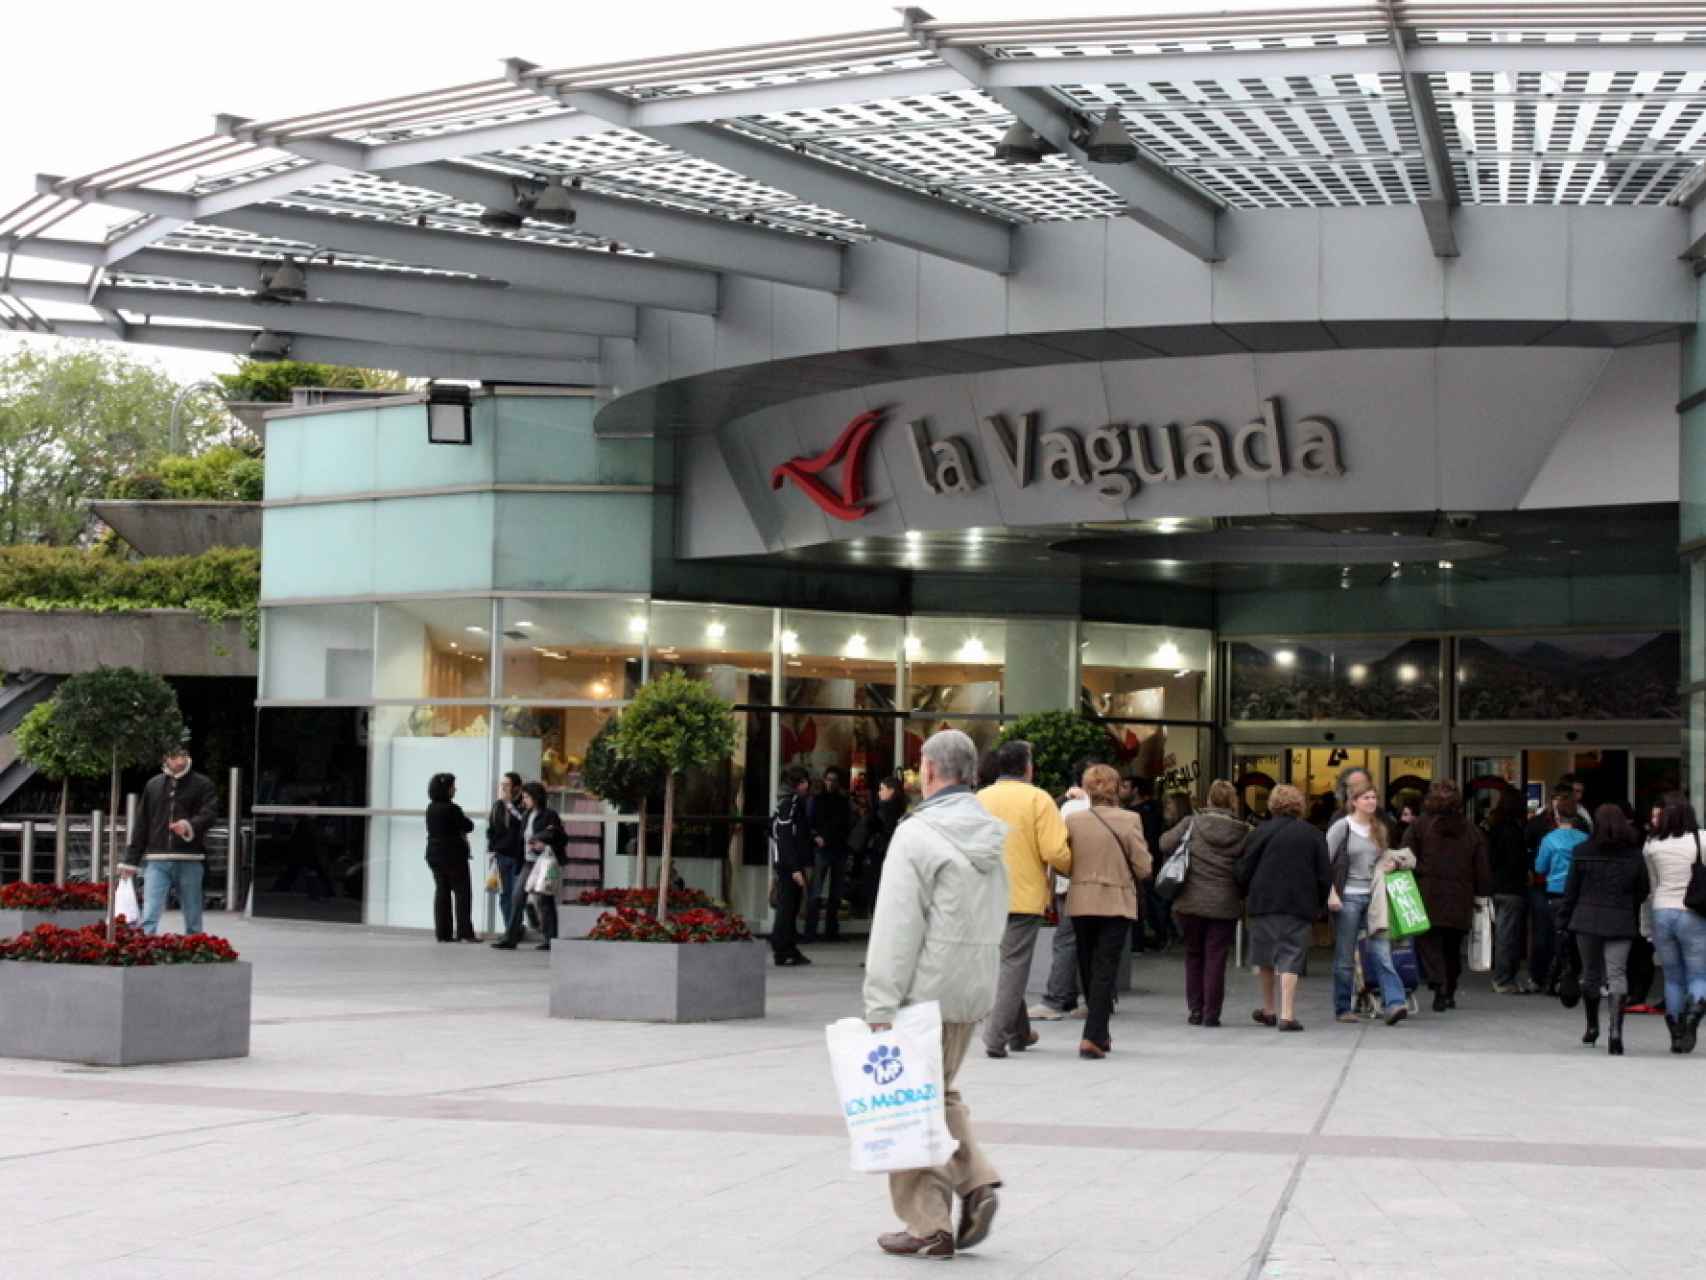 Centro comercial La Vaguada/Krista/Flickr